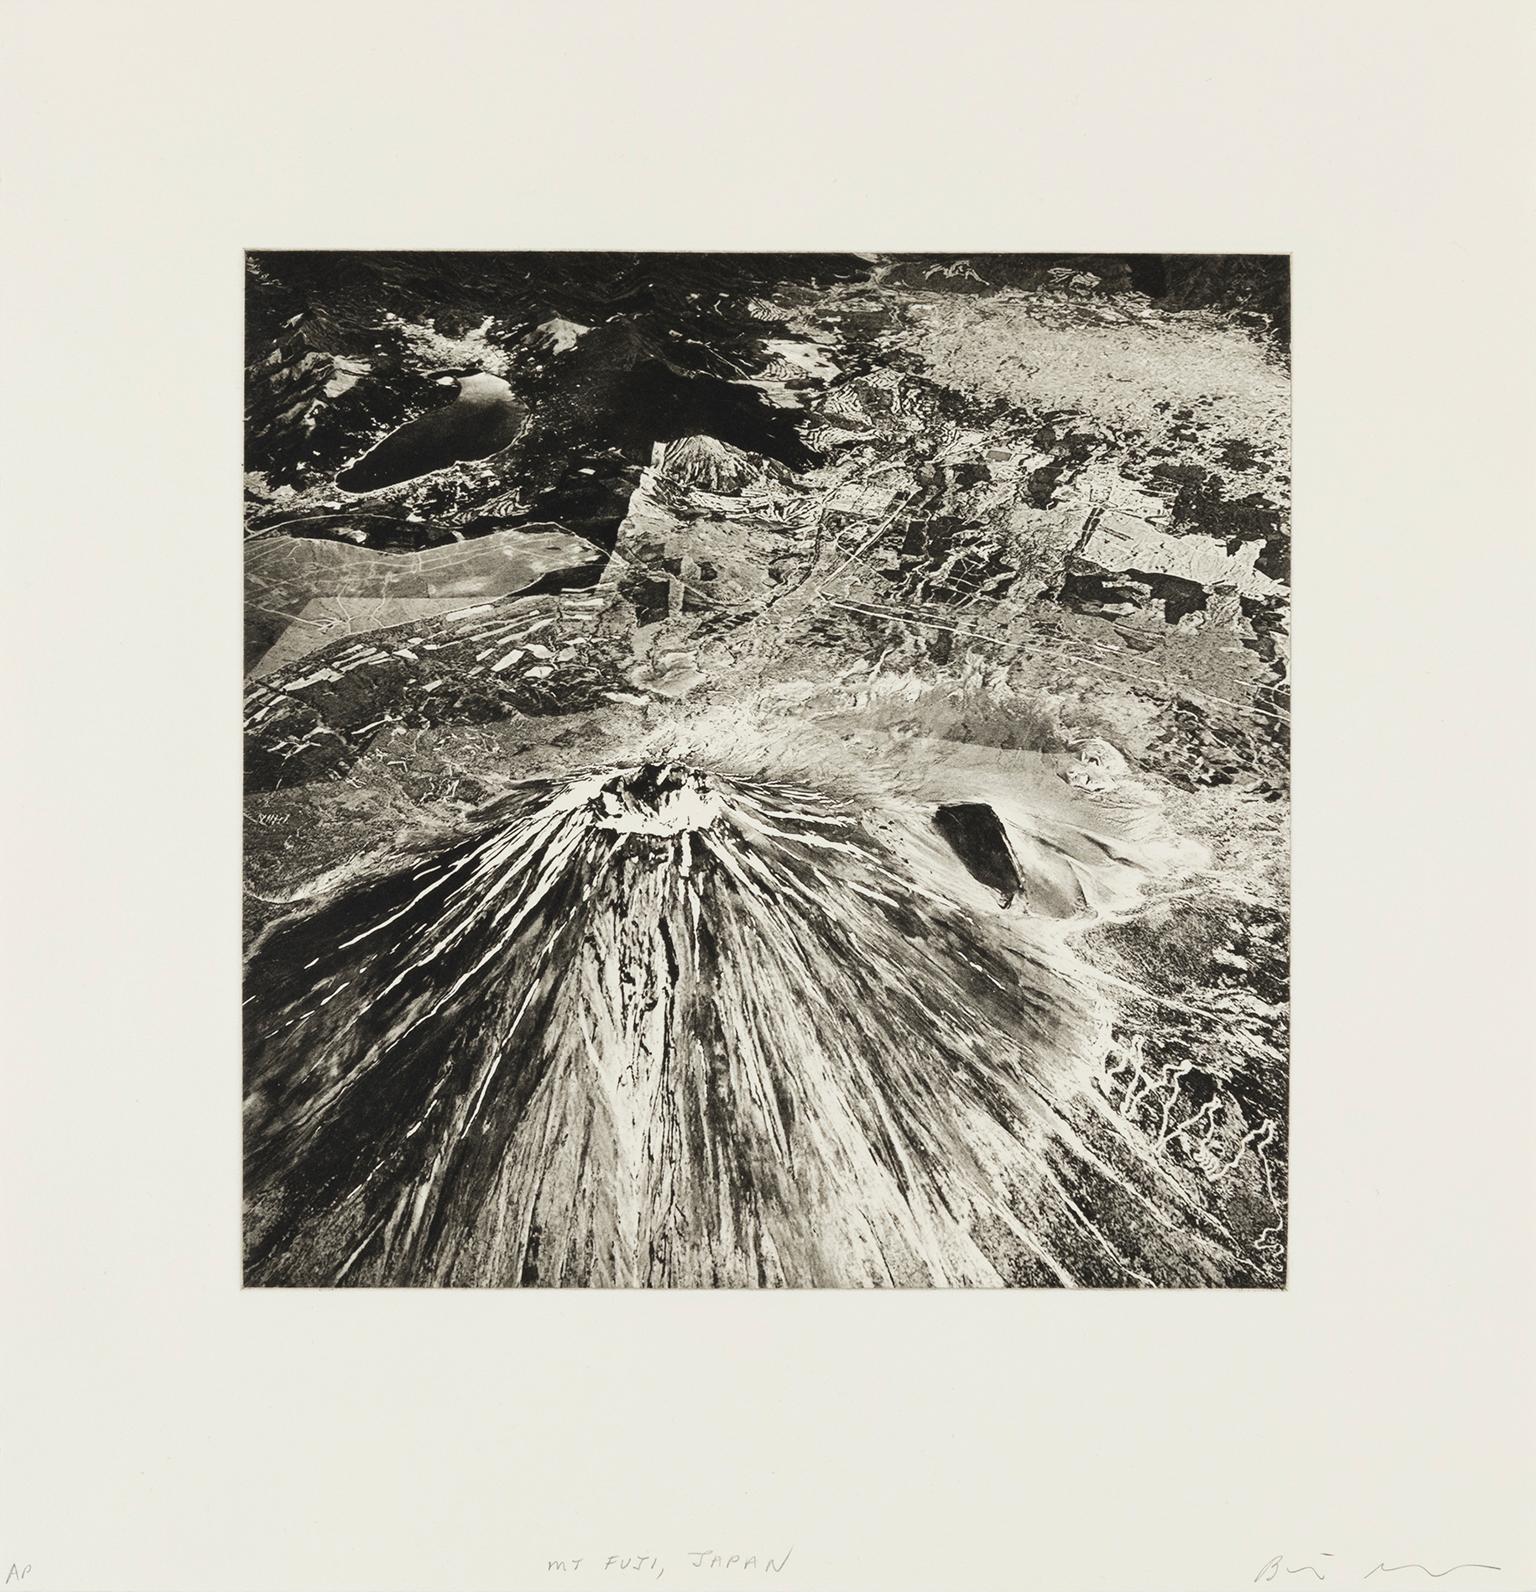 Landscape Print Beth Ganz - Mont Fuji, Japon - de la série Axis Mundi, Contemporary